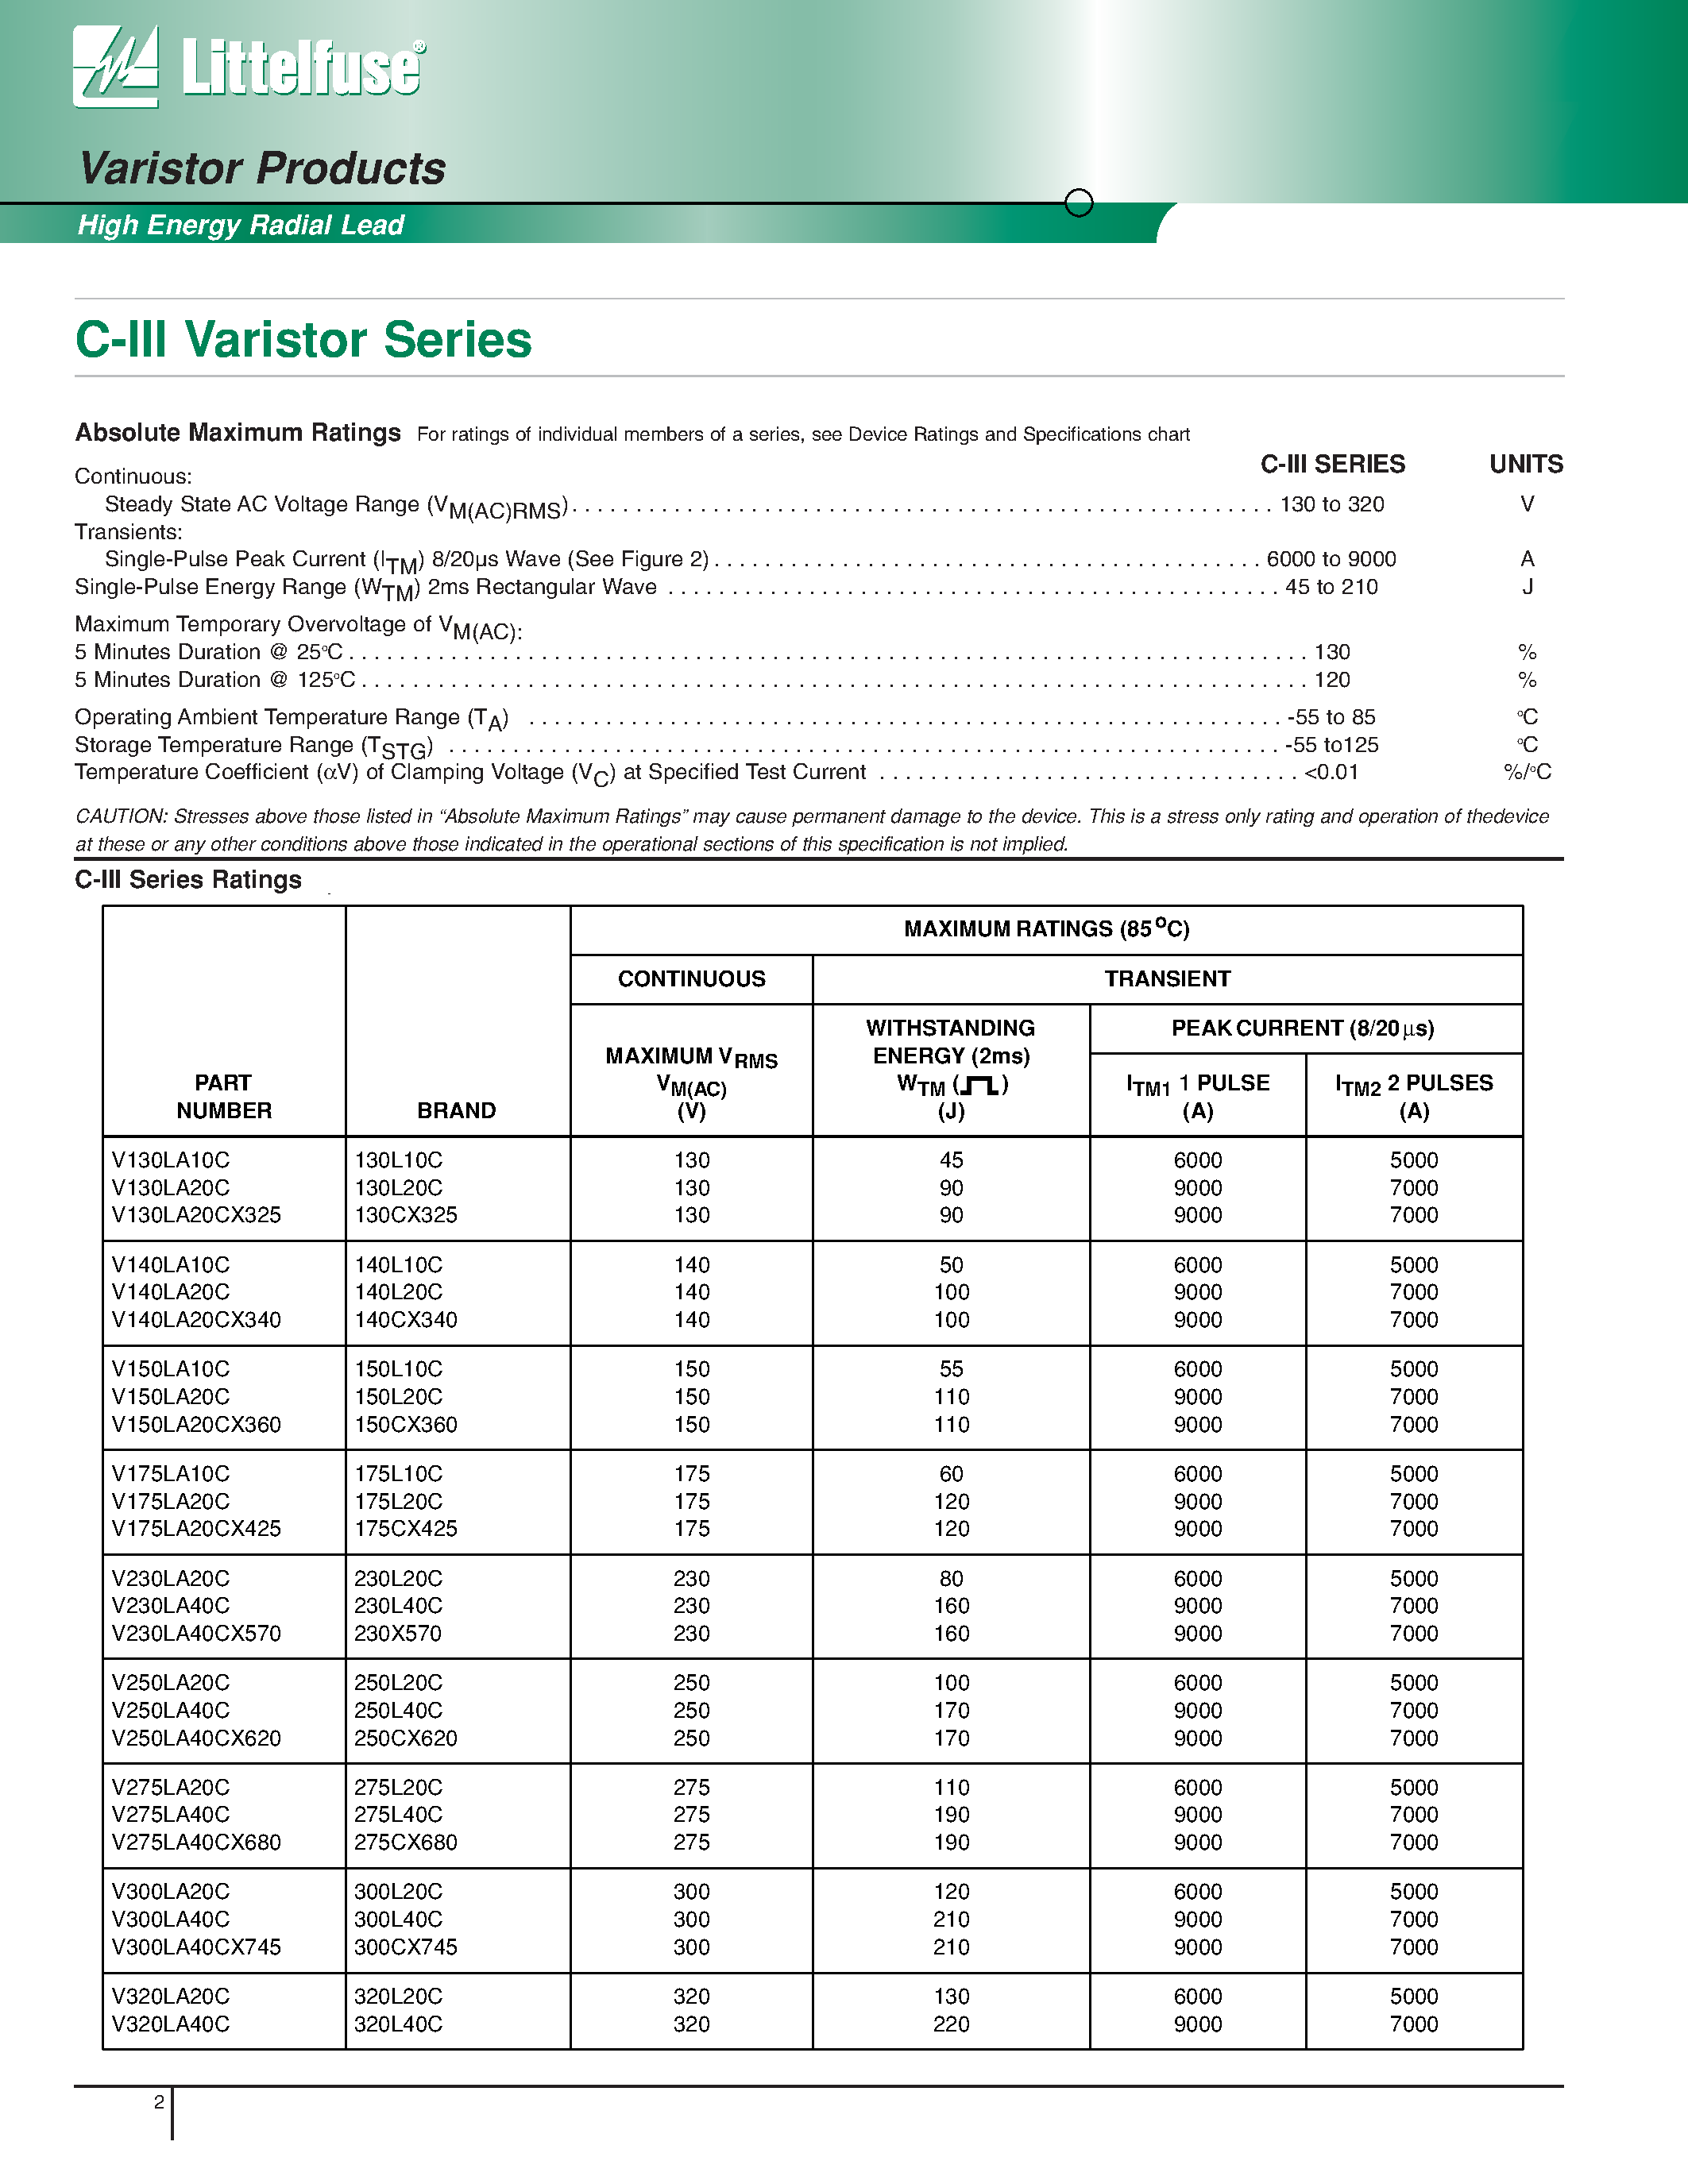 Datasheet V320LA20C - C-III Varistor Series page 2